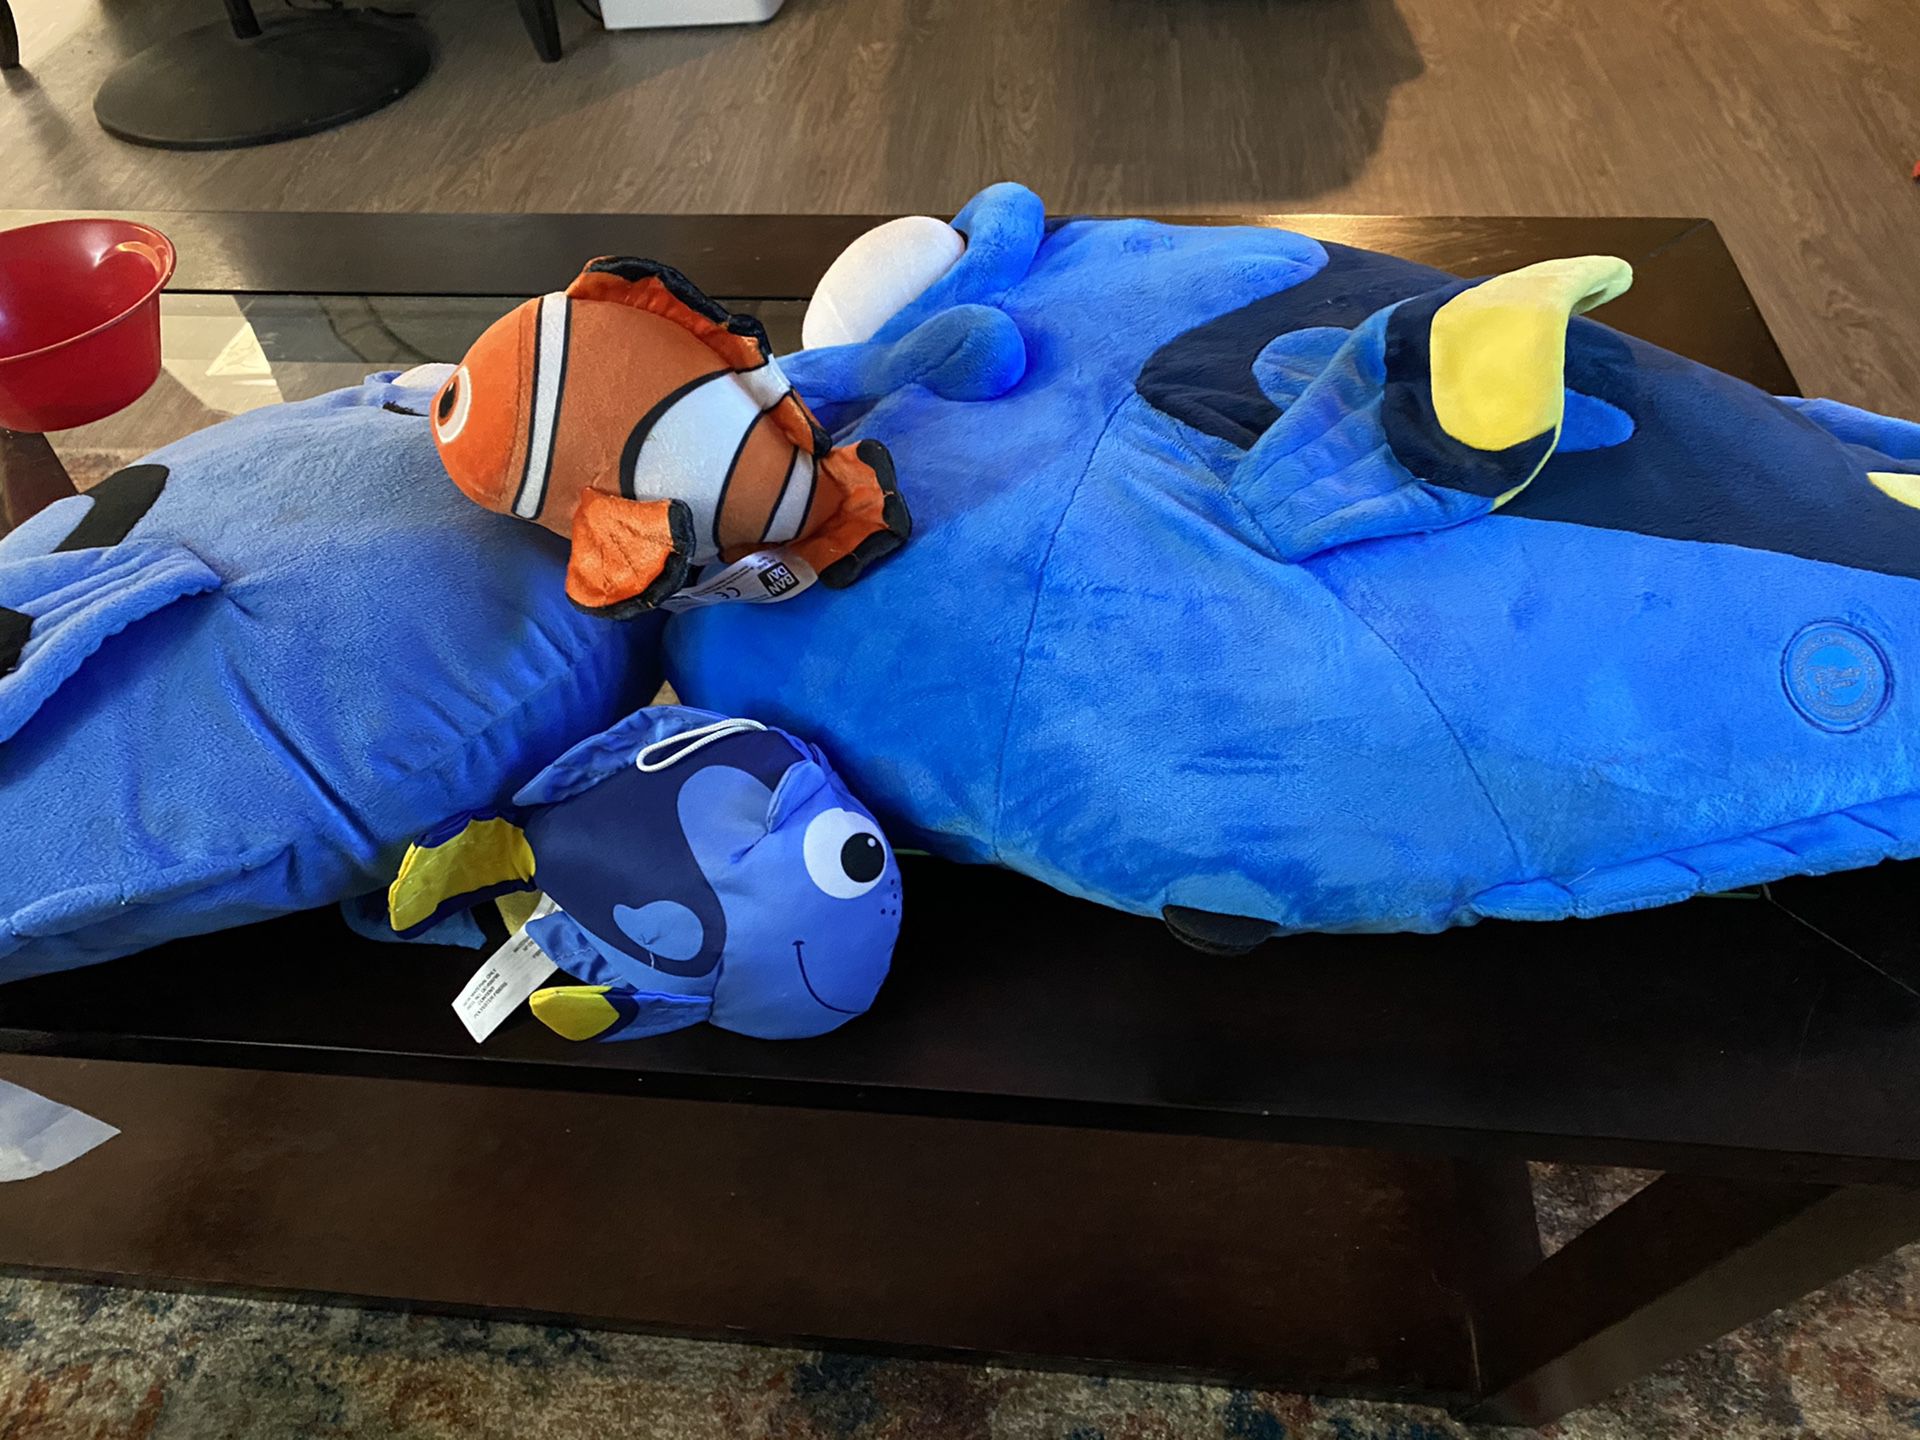 Nemo plush toys